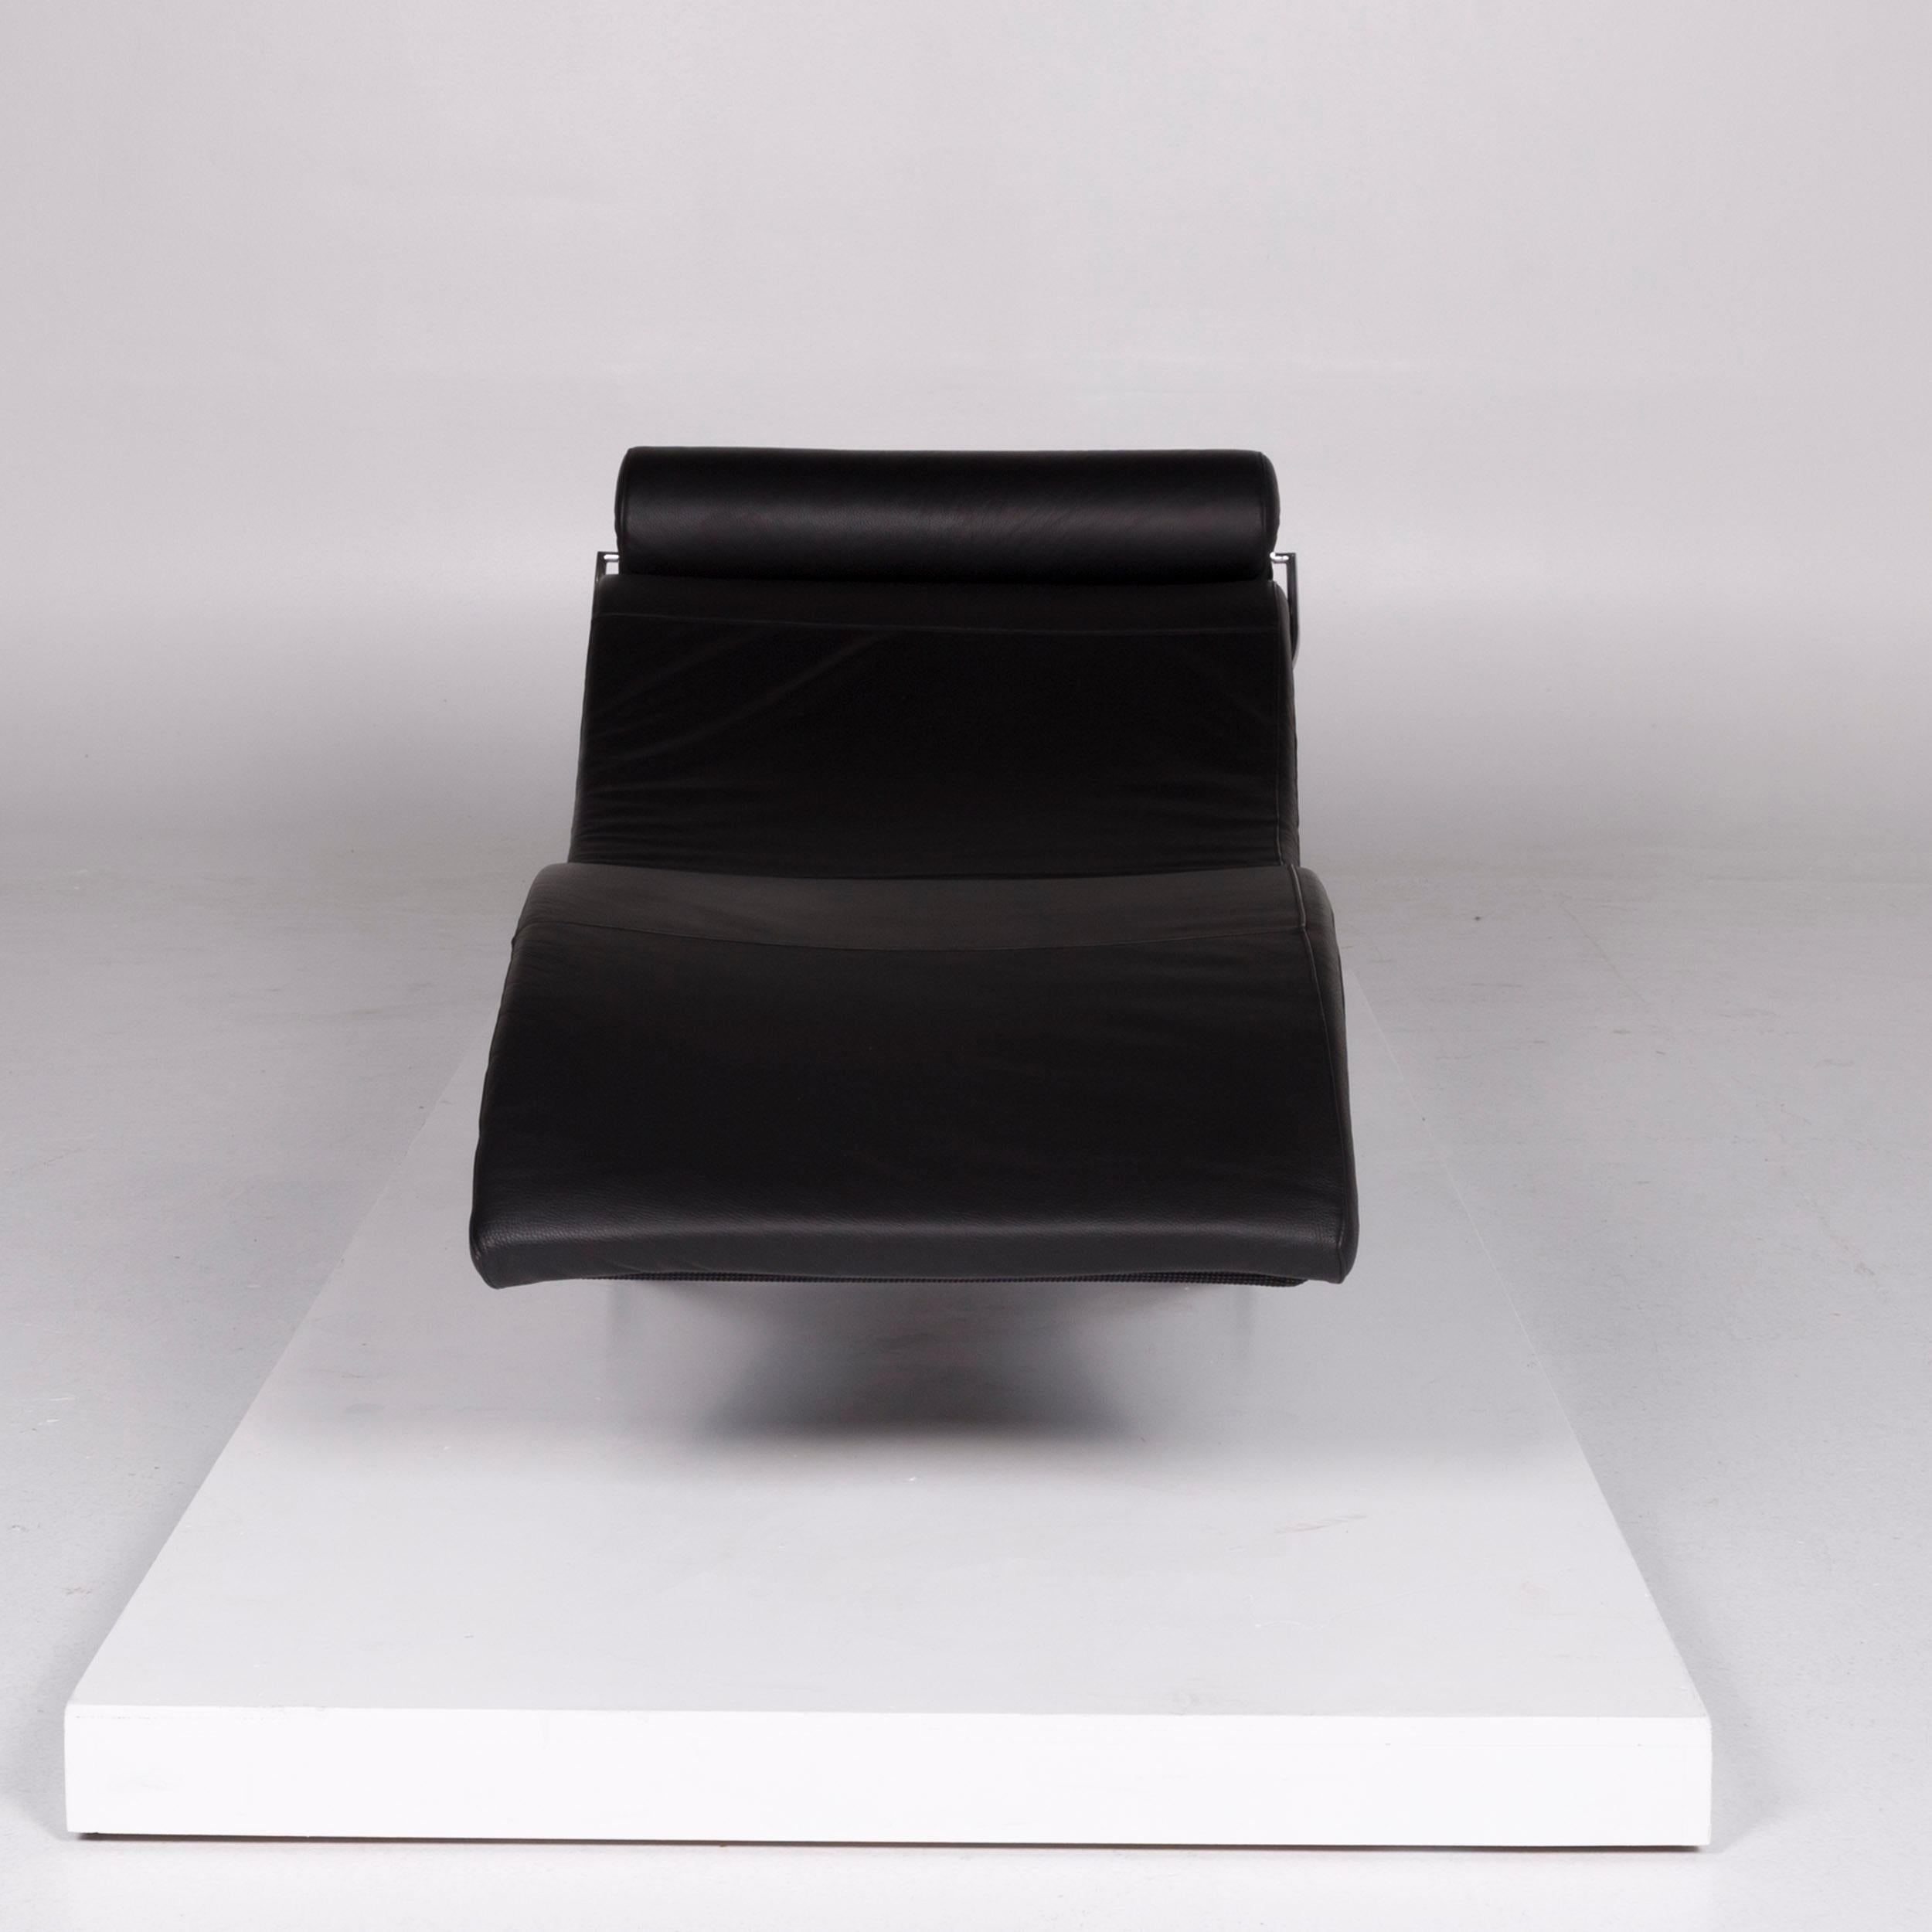 Wir präsentieren Ihnen ein WK Wohnen Designer Leder Liege Schwarz.
 
 Produktabmessungen in Zentimetern:
 
 Tiefe 184
 Breite 73
 Höhe 56
 Sitzhöhe 35
 Sitztiefe 112
 Sitzbreite 65
 Rückenhöhe 37.


  